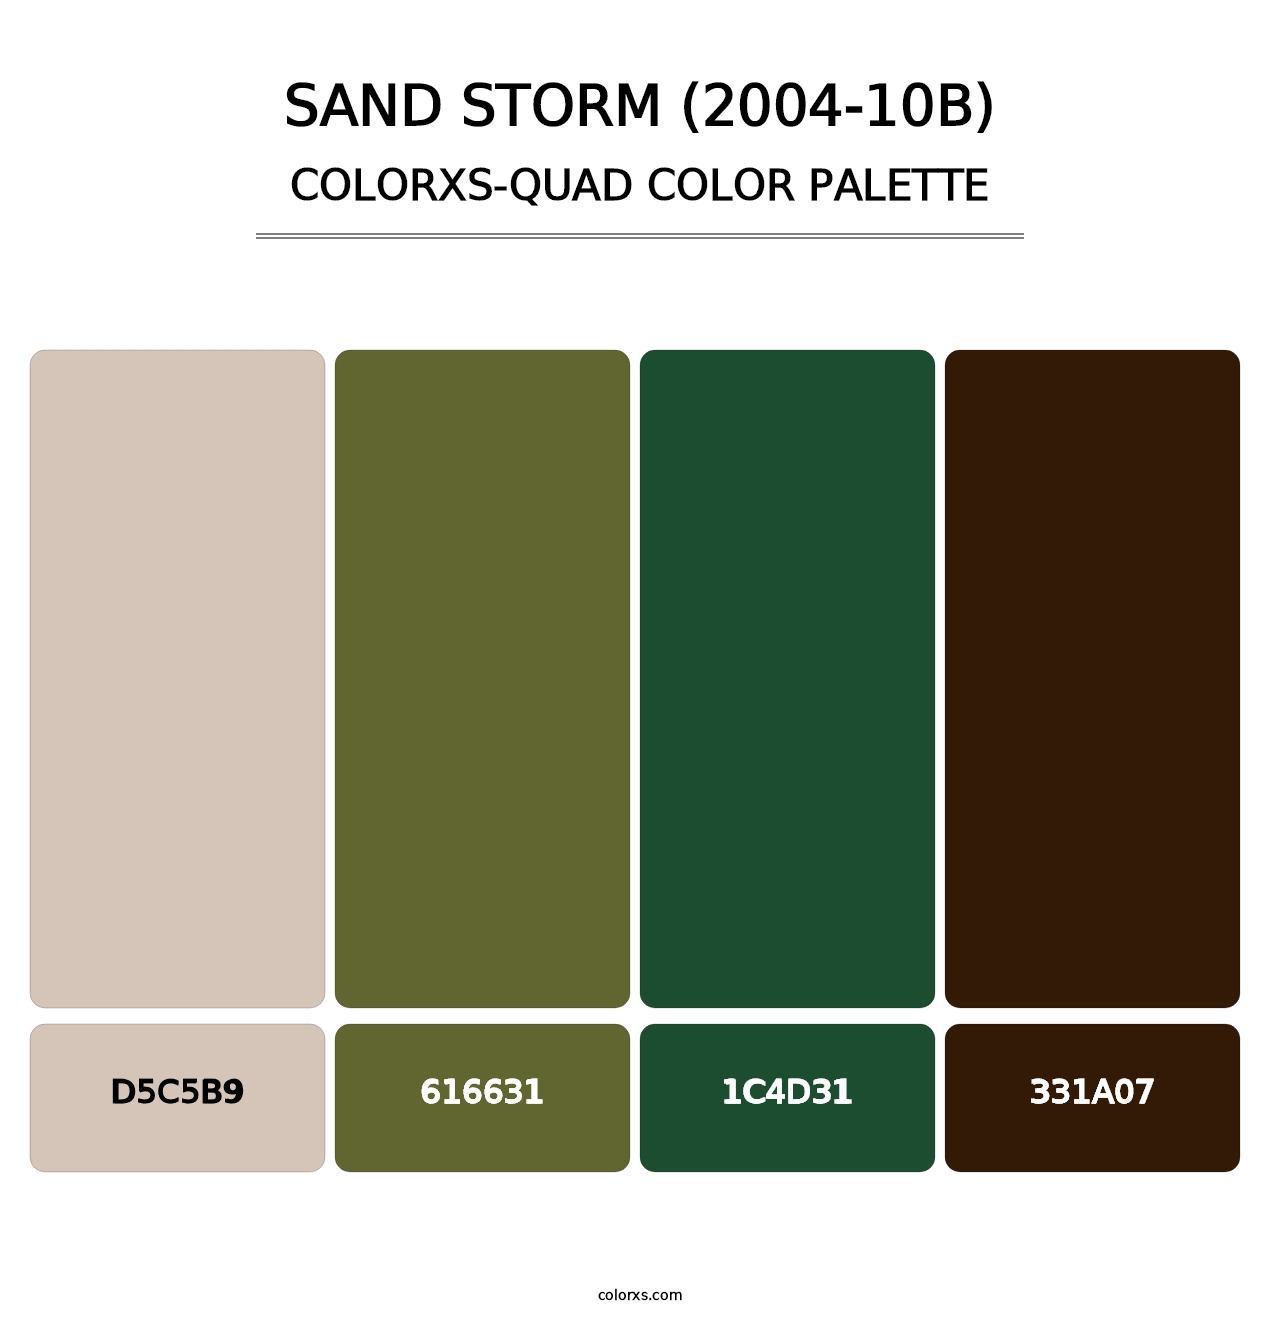 Sand Storm (2004-10B) - Colorxs Quad Palette